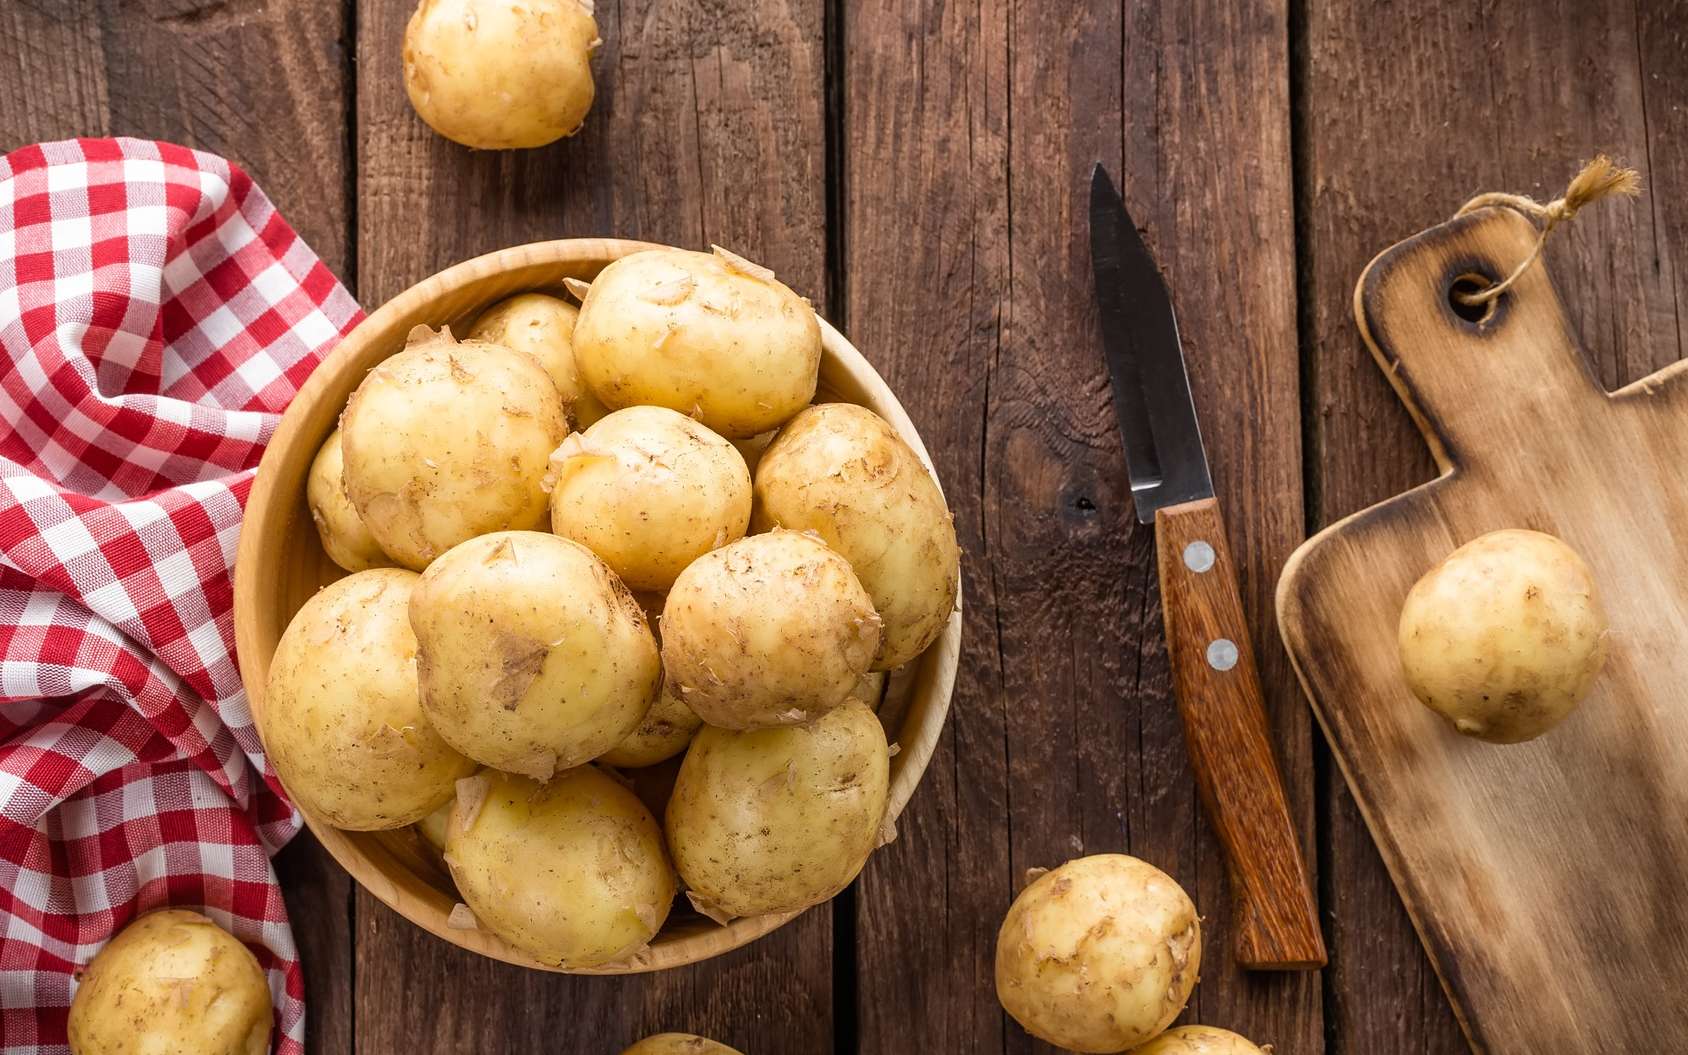 Картошка, польза и вред для здоровья человека, употребляющего его